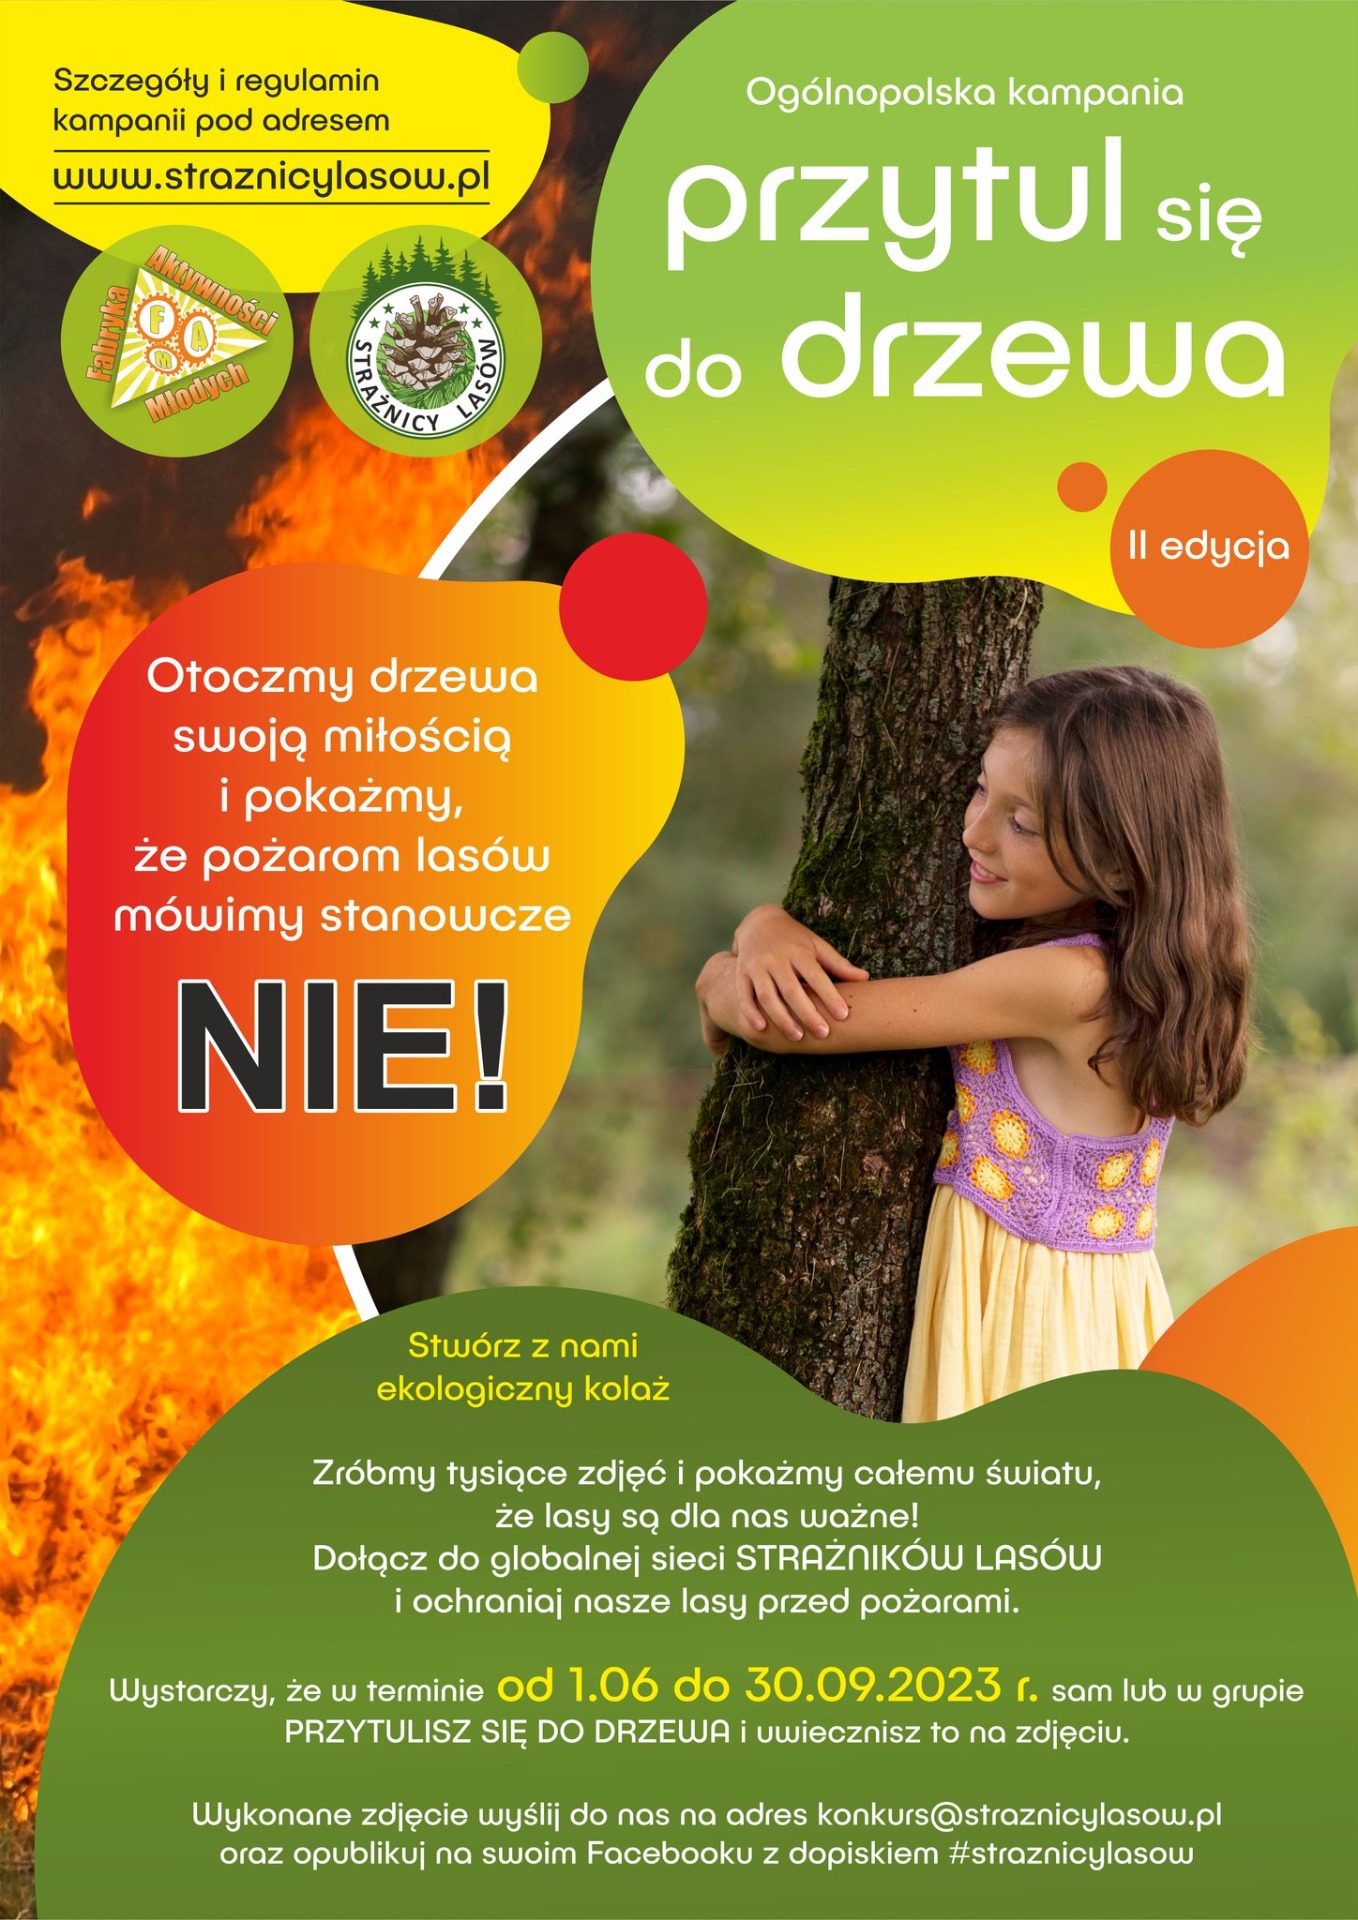 Certyfikat ogólnopolskiej kampanii "Przytul się do drzewa 2023" dla SP12 - Obrazek 2